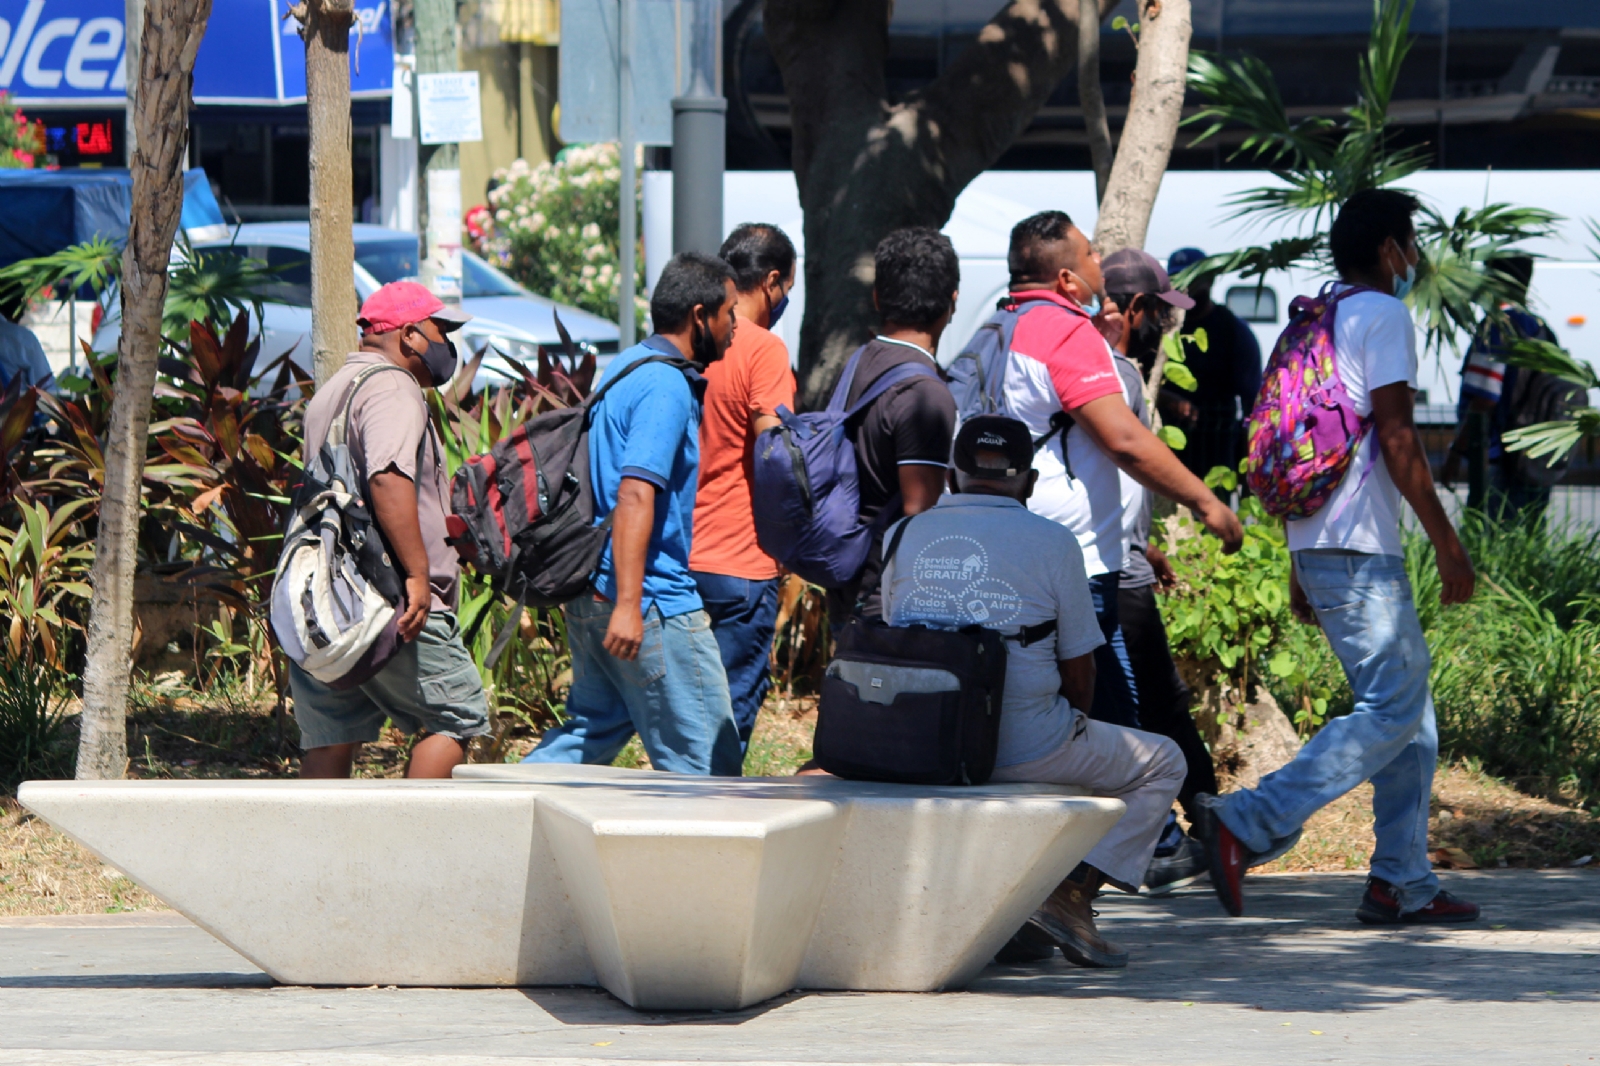 La explanada de Plaza Las Tiendas de Cancún se convirtió en un lugar donde personas sin empleo esperan que alguien los contrate